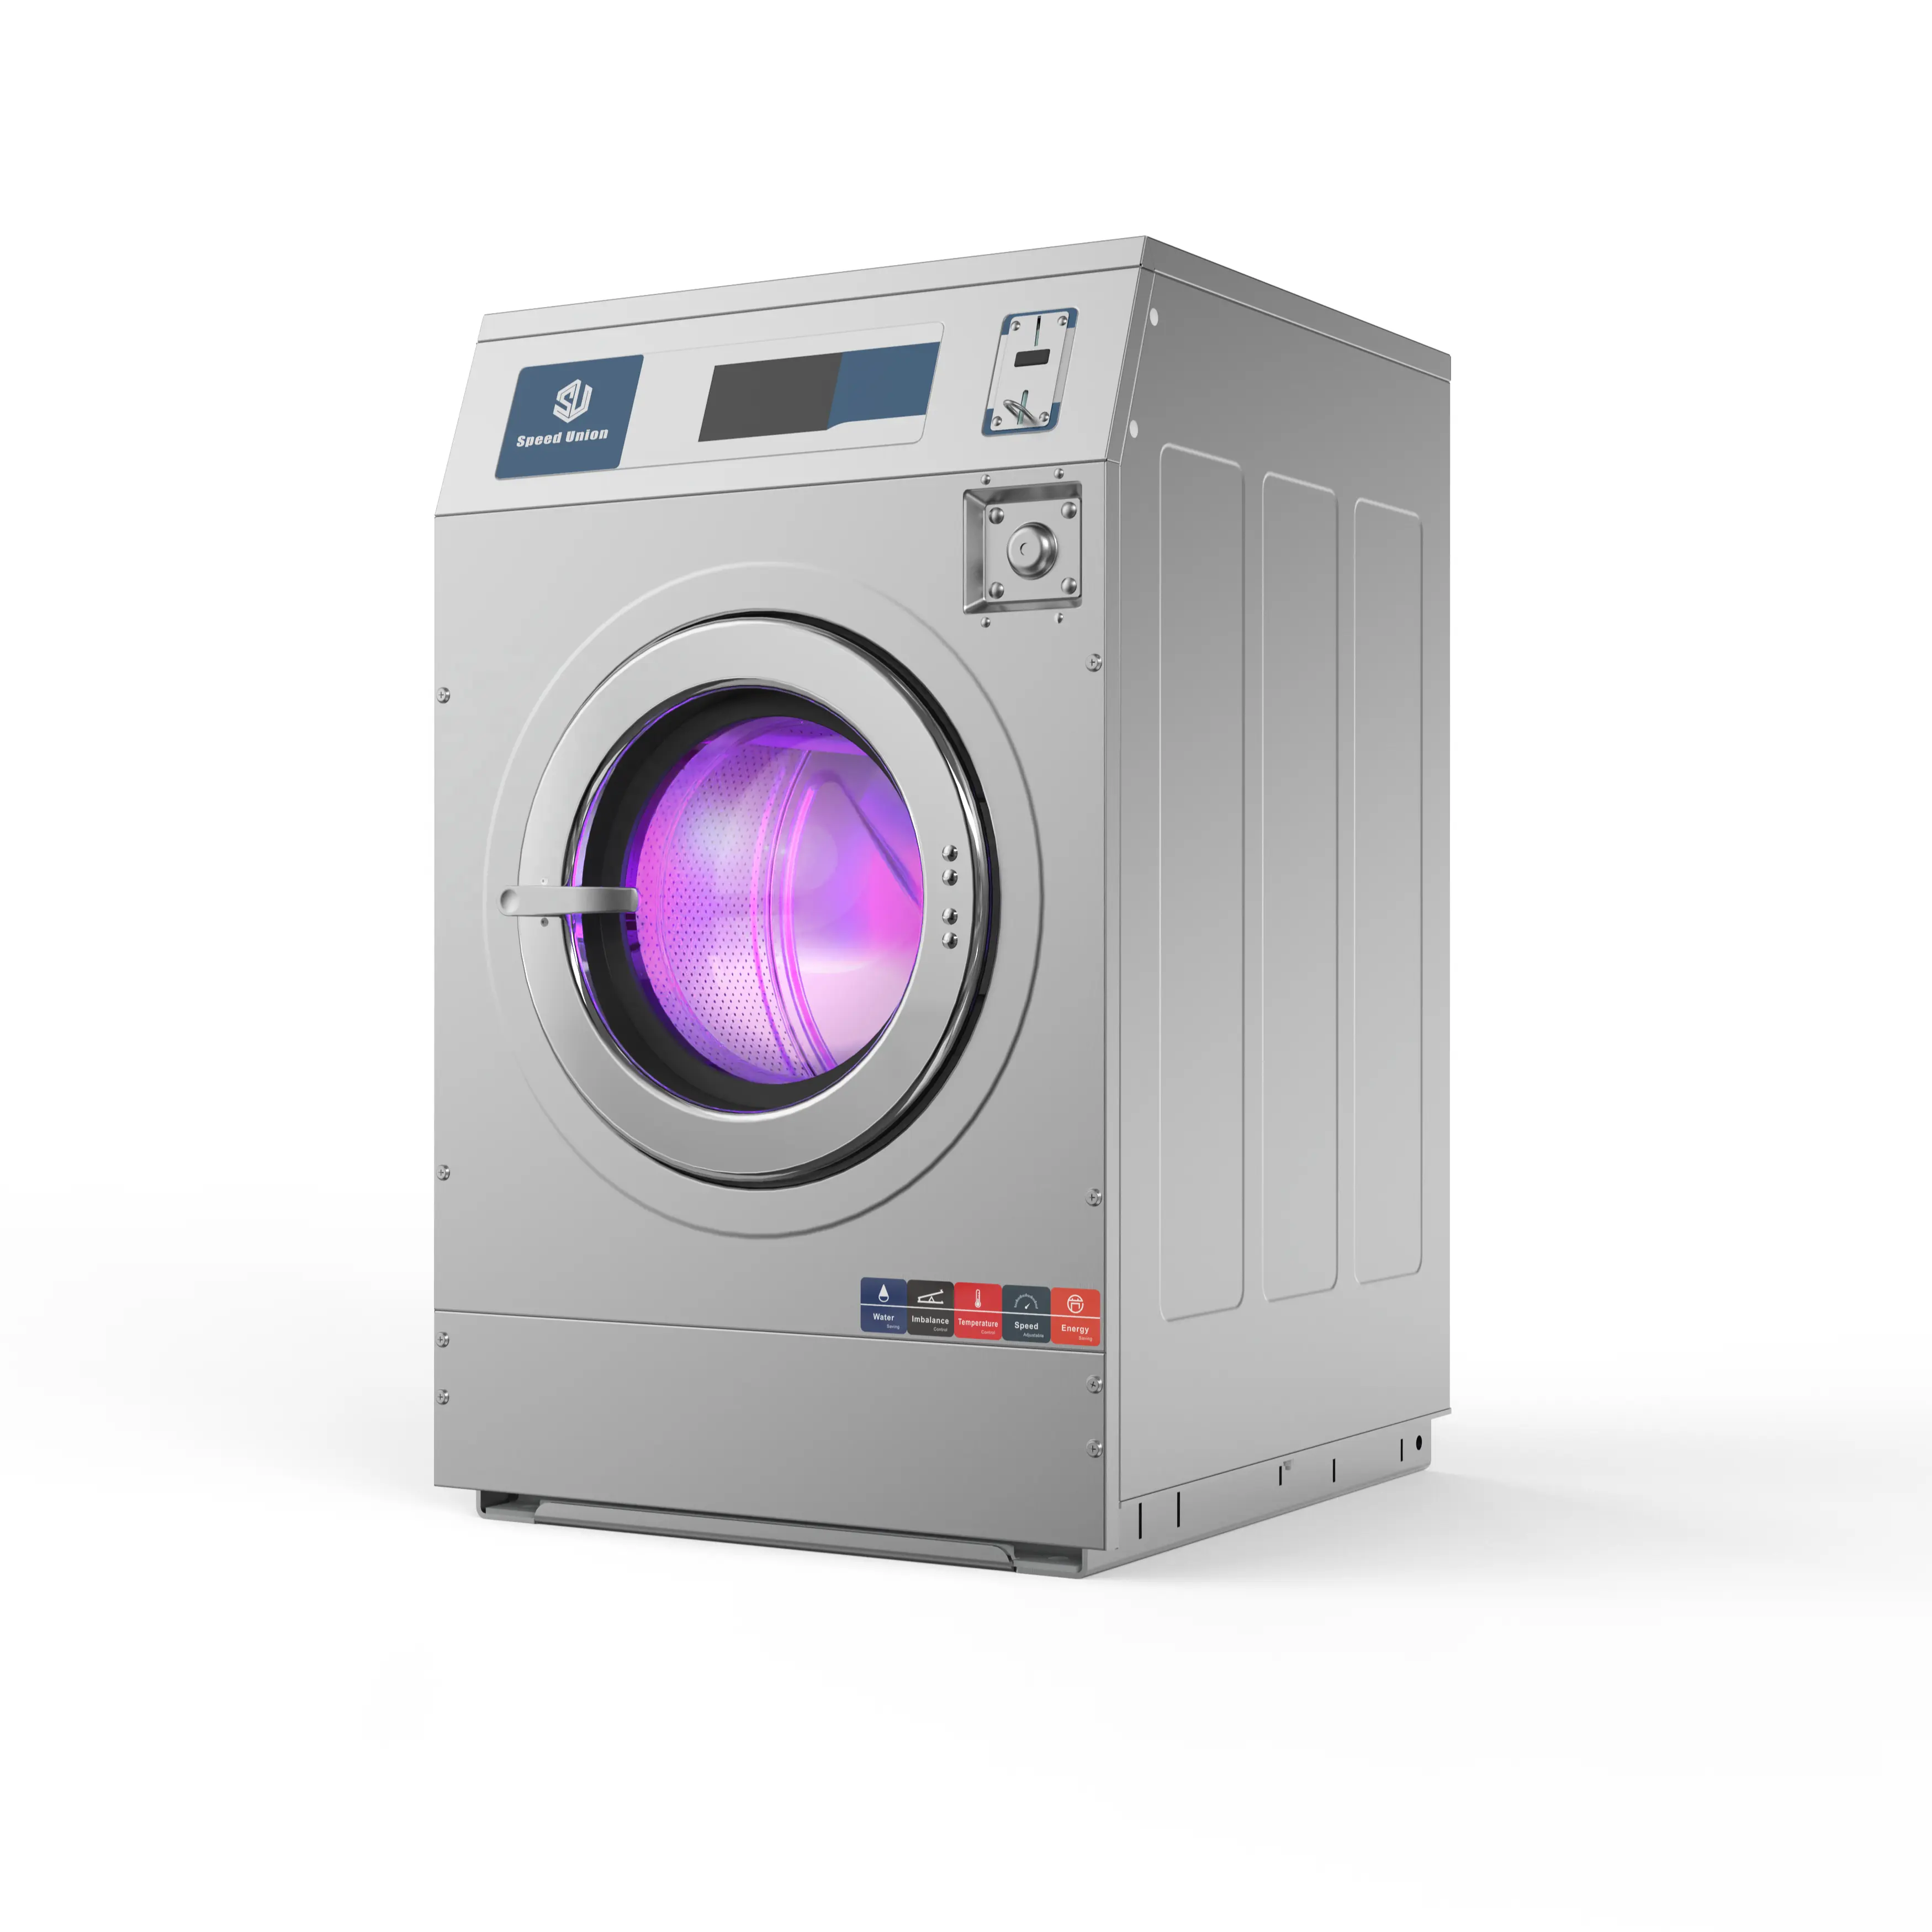 Satılık ticari yüksek Spin çamaşır makinesi Self-service çamaşır makinesi çamaşır ekipmanları